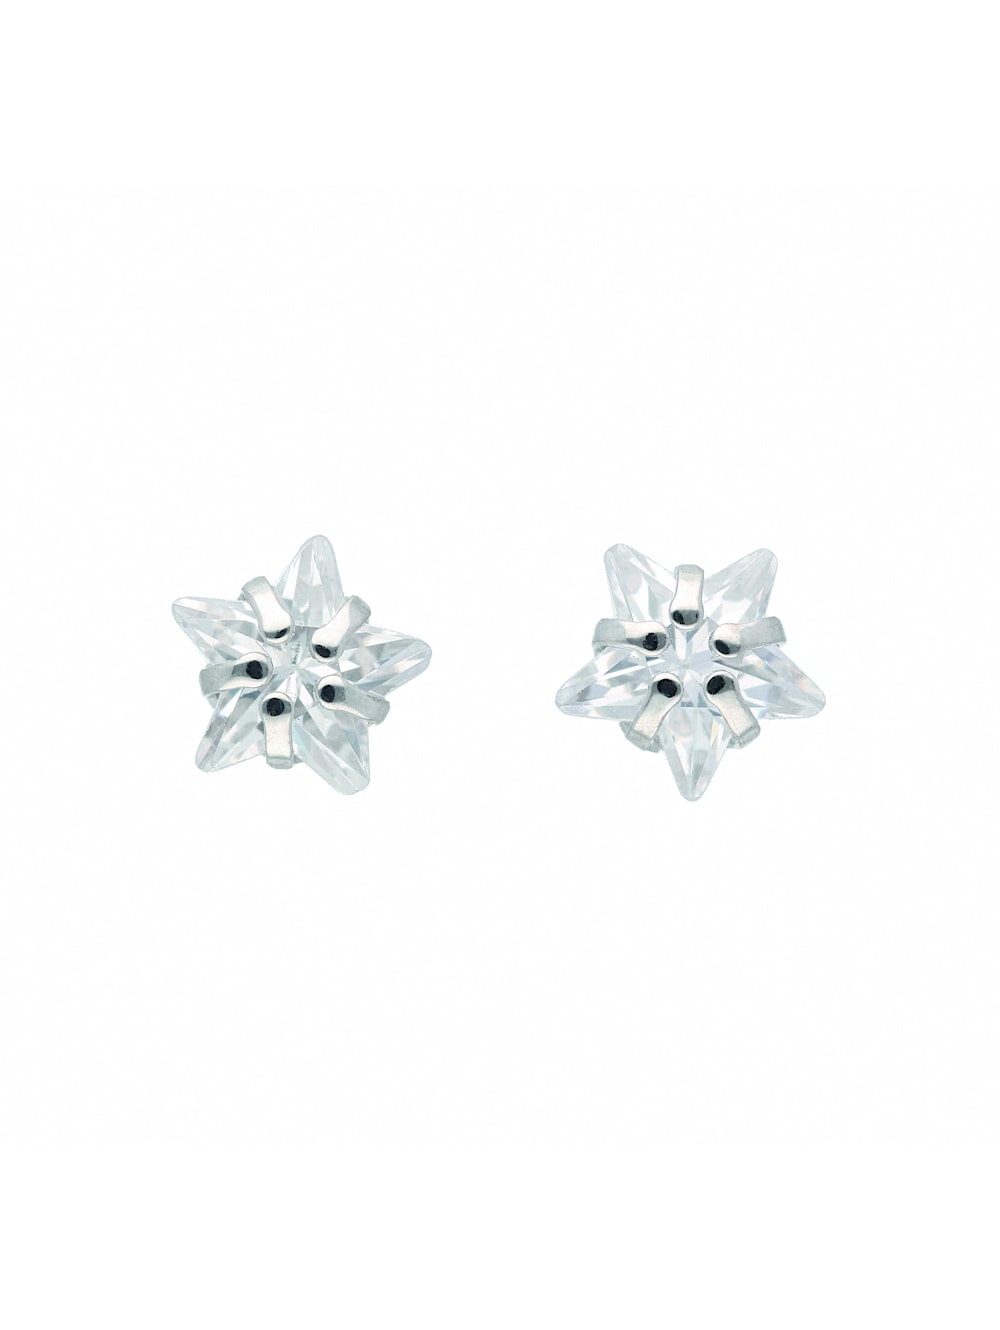 1001 Diamonds 925 Ohrringe Paar Wenz | Silberschmuck / Silber mit Zirkonia Damen Stern Ohrstecker 1